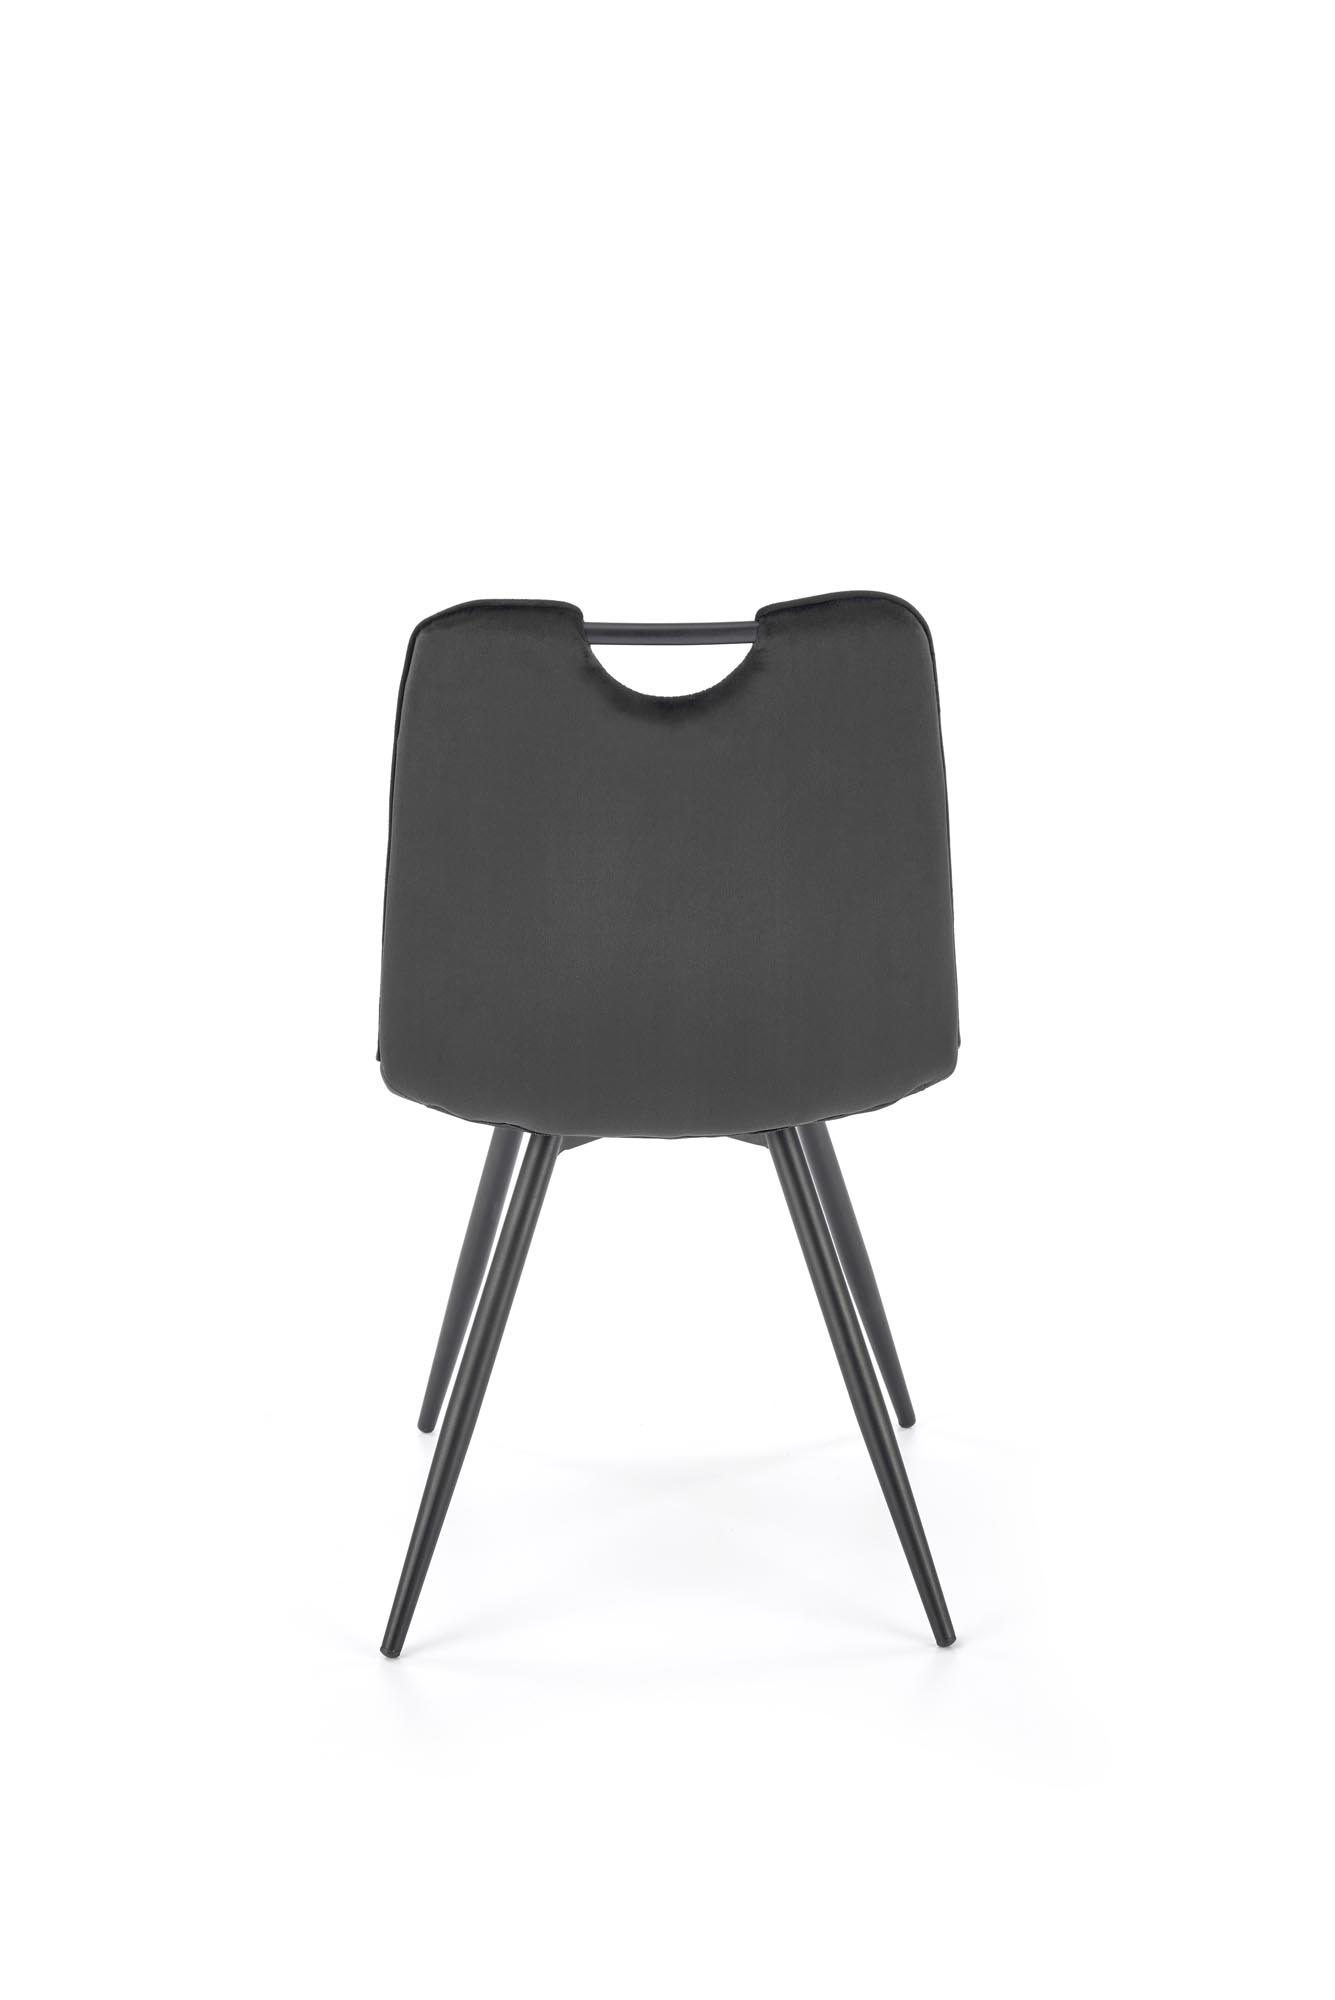 K521 Židle Černý Židle čalouněné k521 - Černý